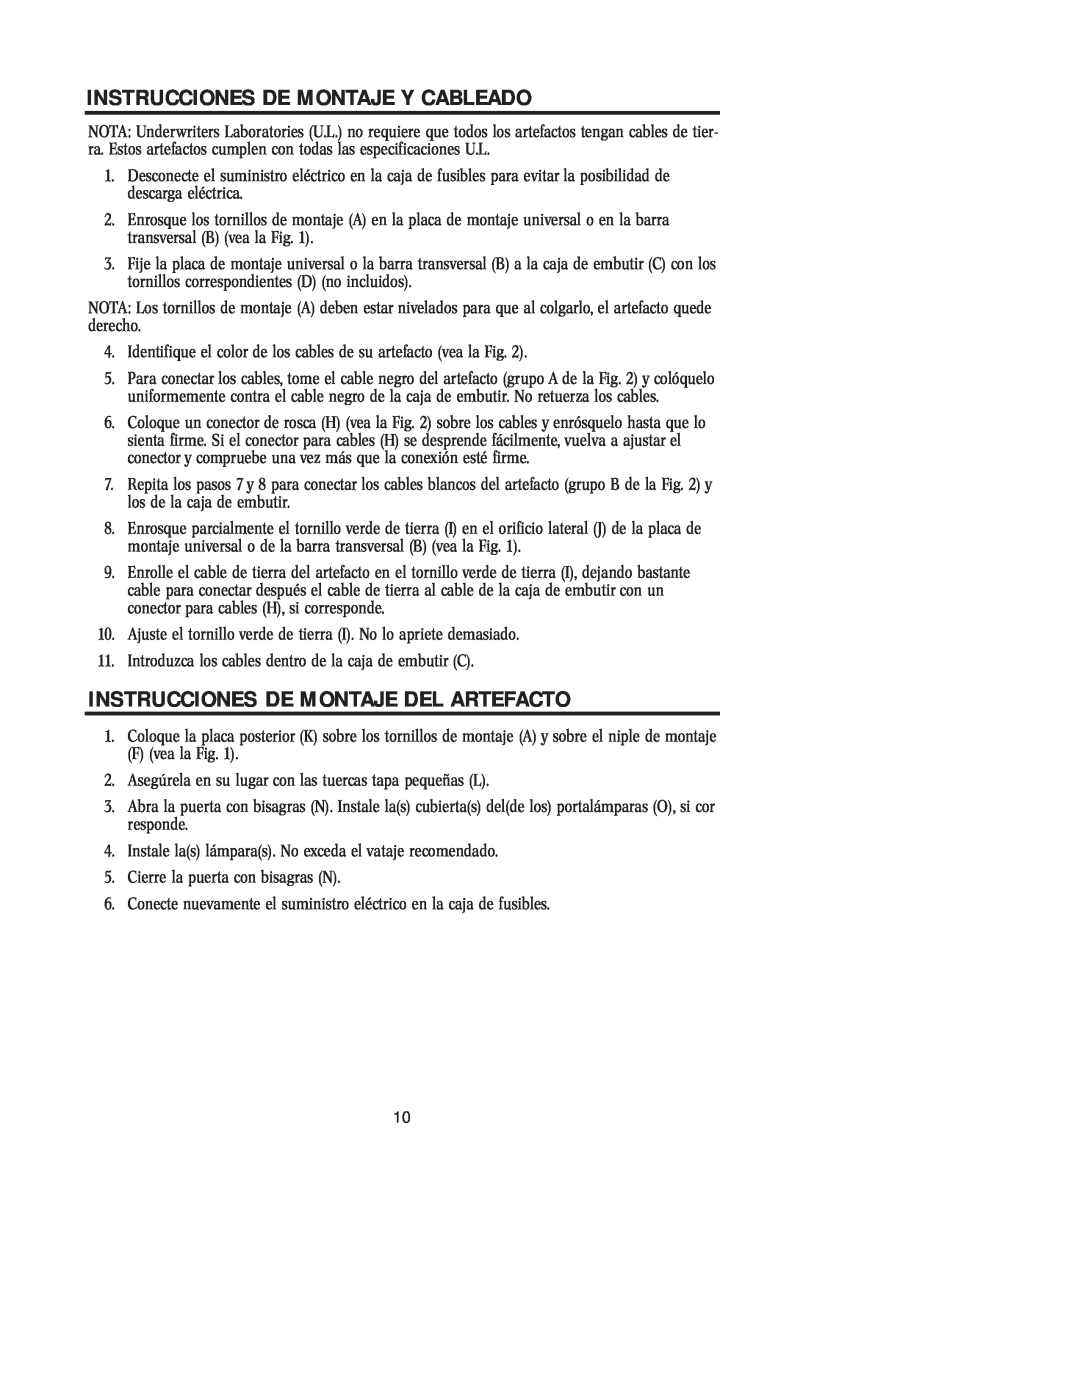 Westinghouse W-125 owner manual Instrucciones De Montaje Y Cableado, Instrucciones De Montaje Del Artefacto 